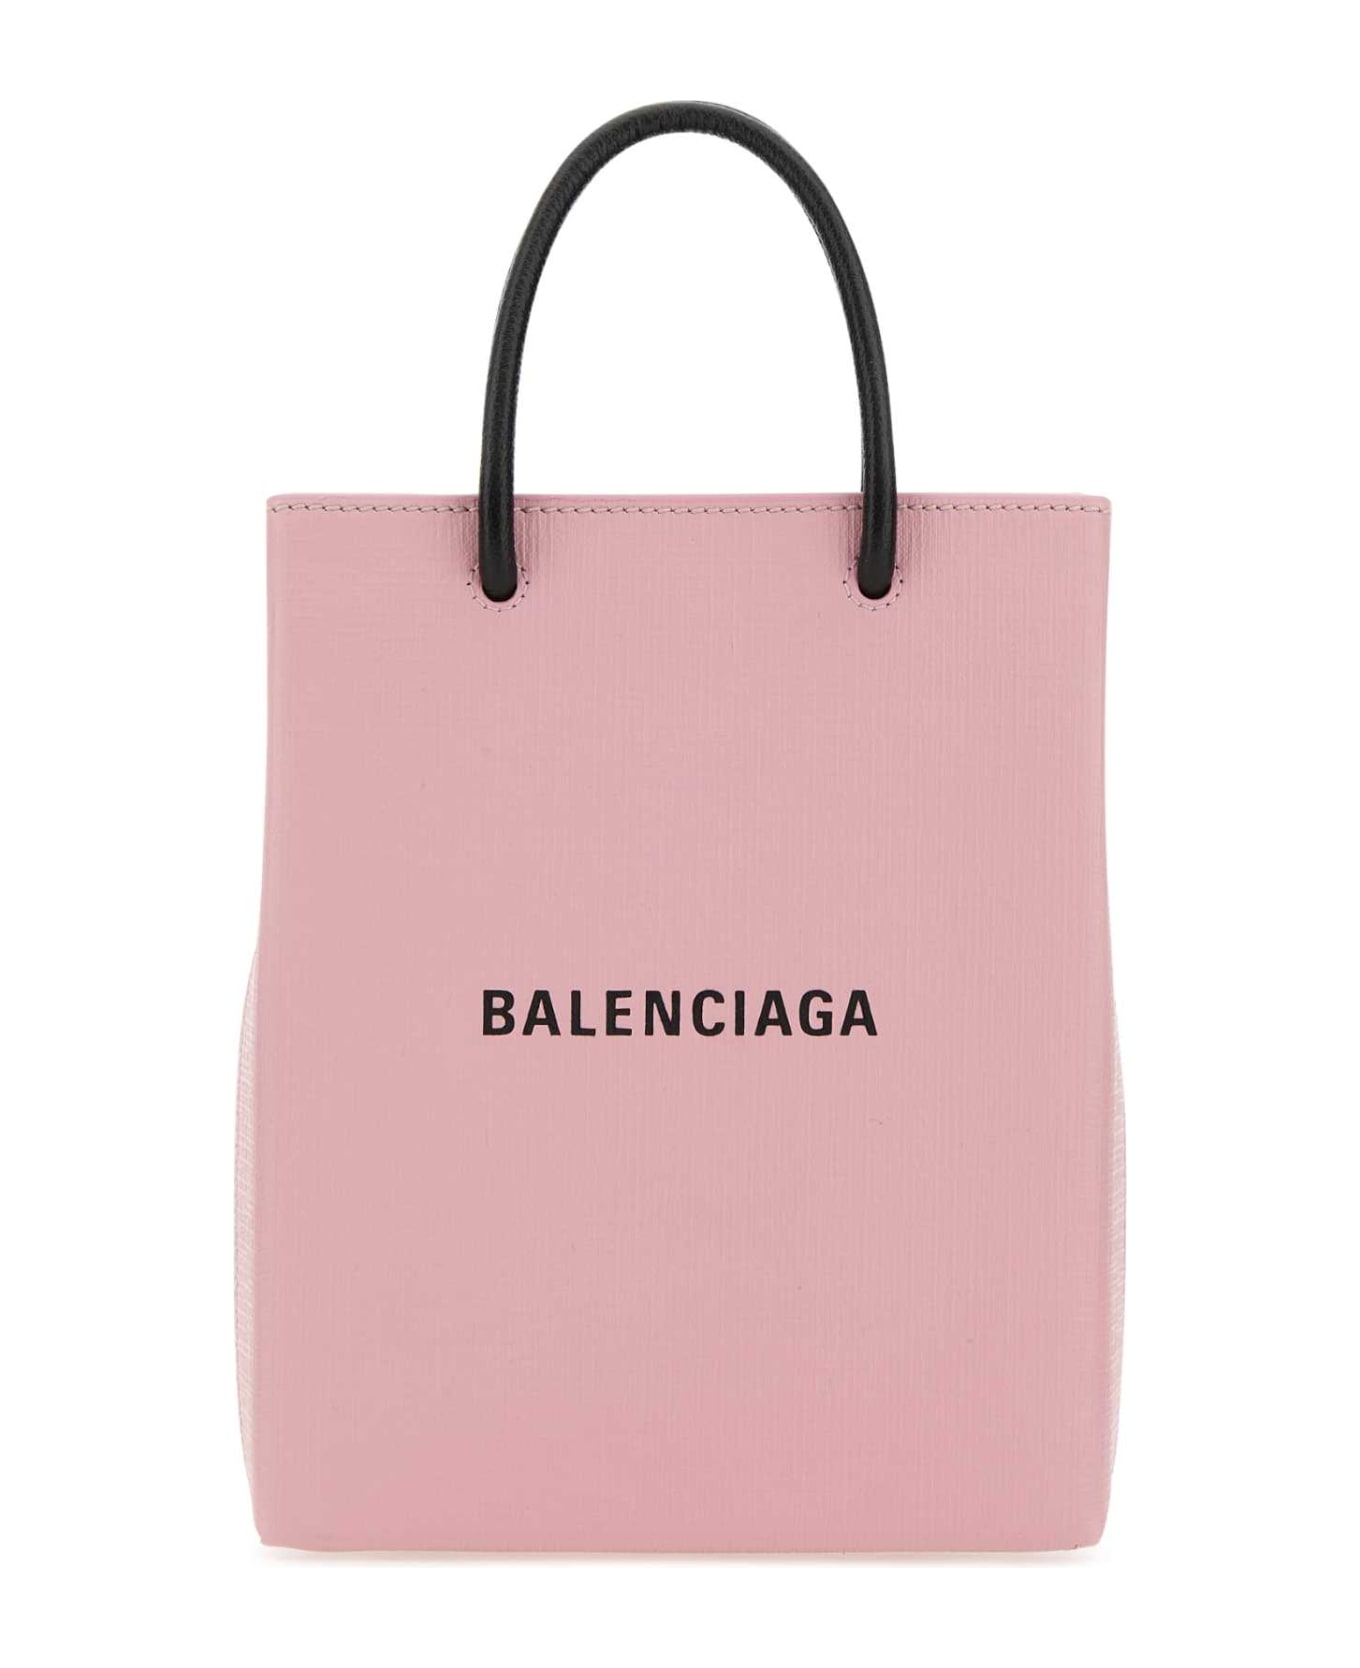 Balenciaga Pastel Pink Leather Phone Case - 6960 デジタルアクセサリー